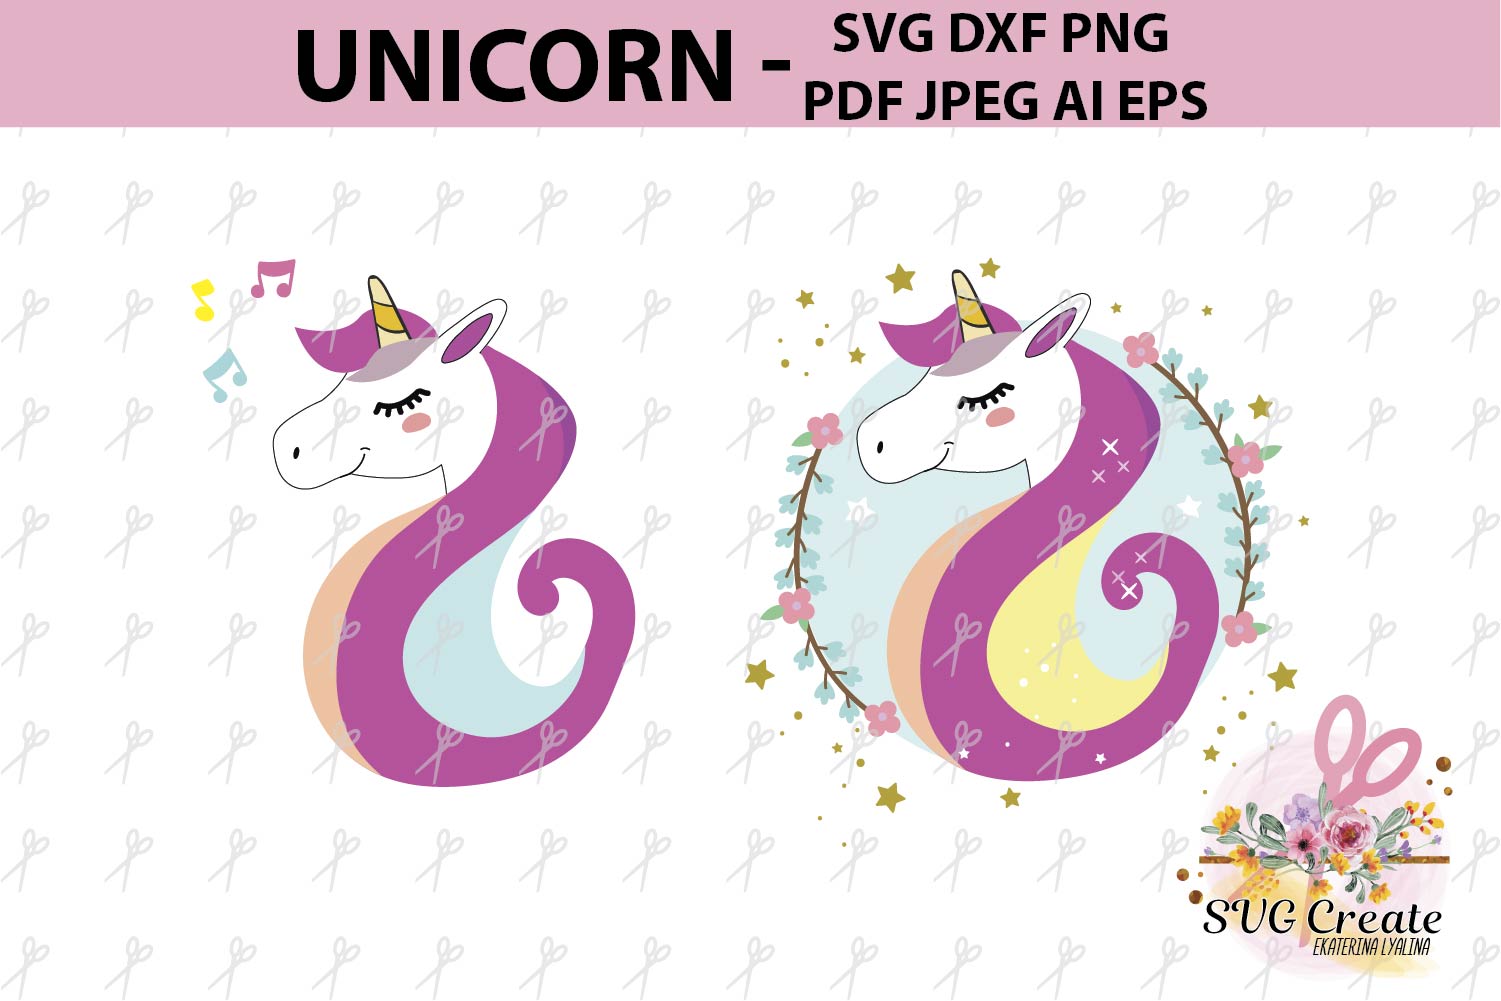 Download Unicorn clipart, Unicorn svg, Unicorn vector, cut file, pdf